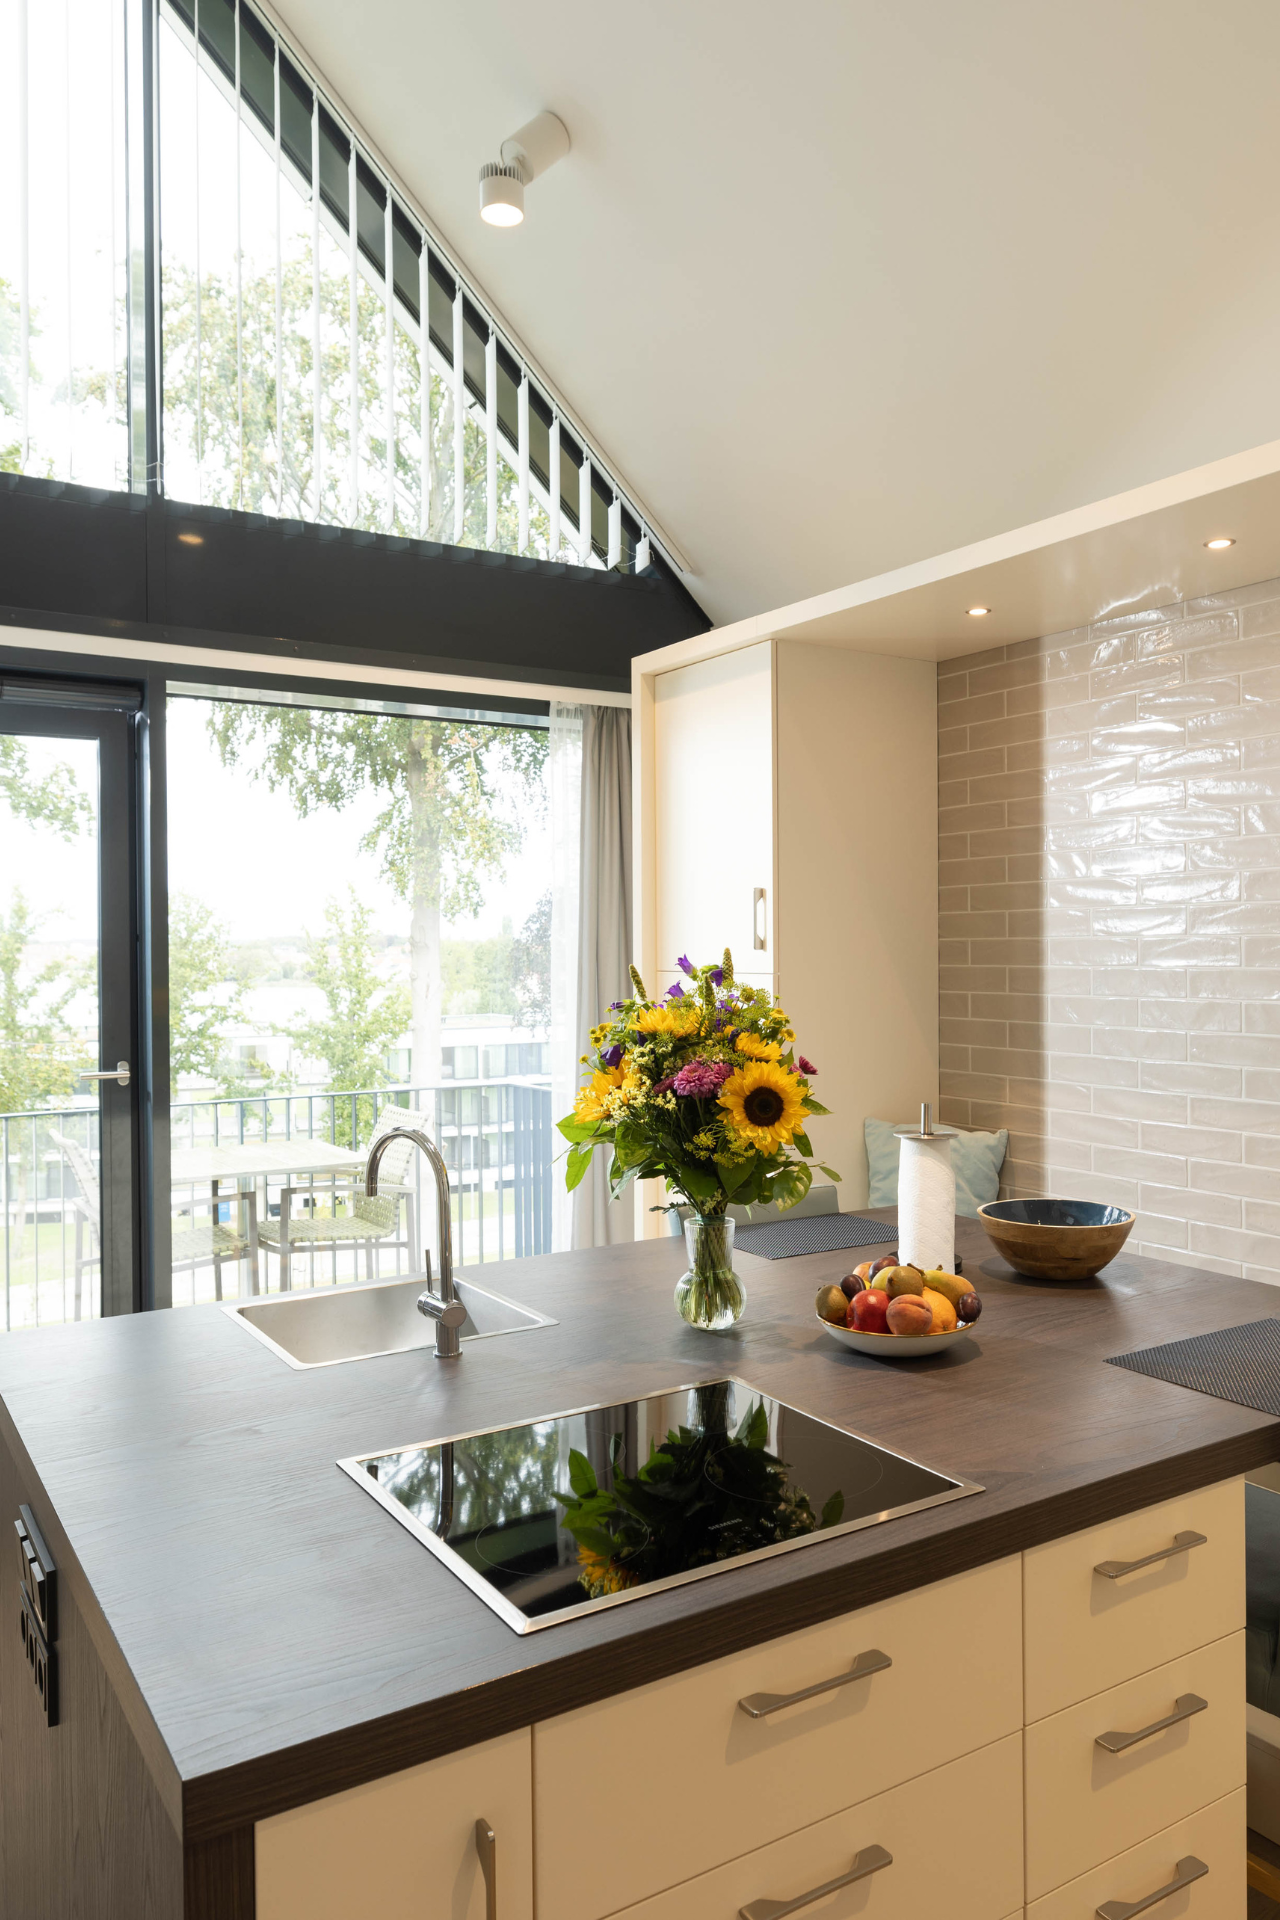 Küchenbereich der Kompass Maisonette Suite mit Blumenstrauß